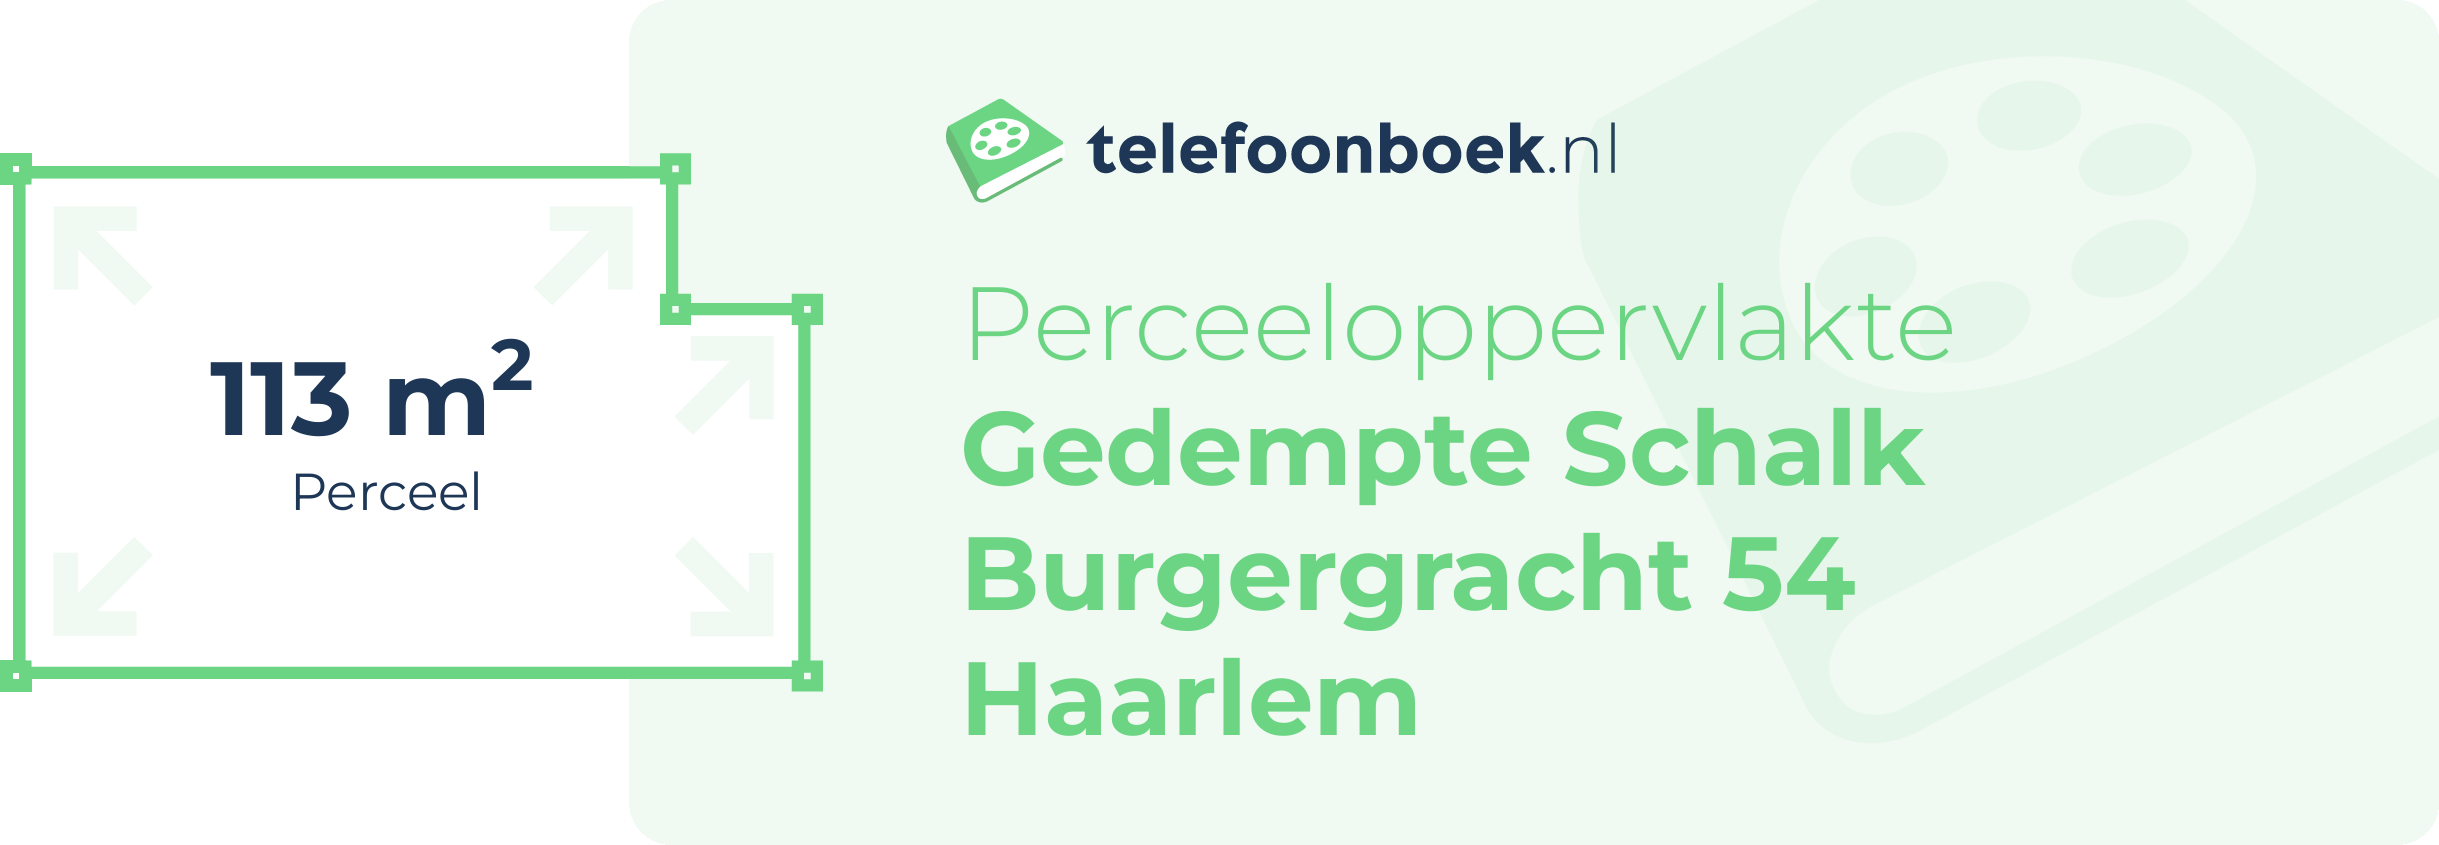 Perceeloppervlakte Gedempte Schalk Burgergracht 54 Haarlem